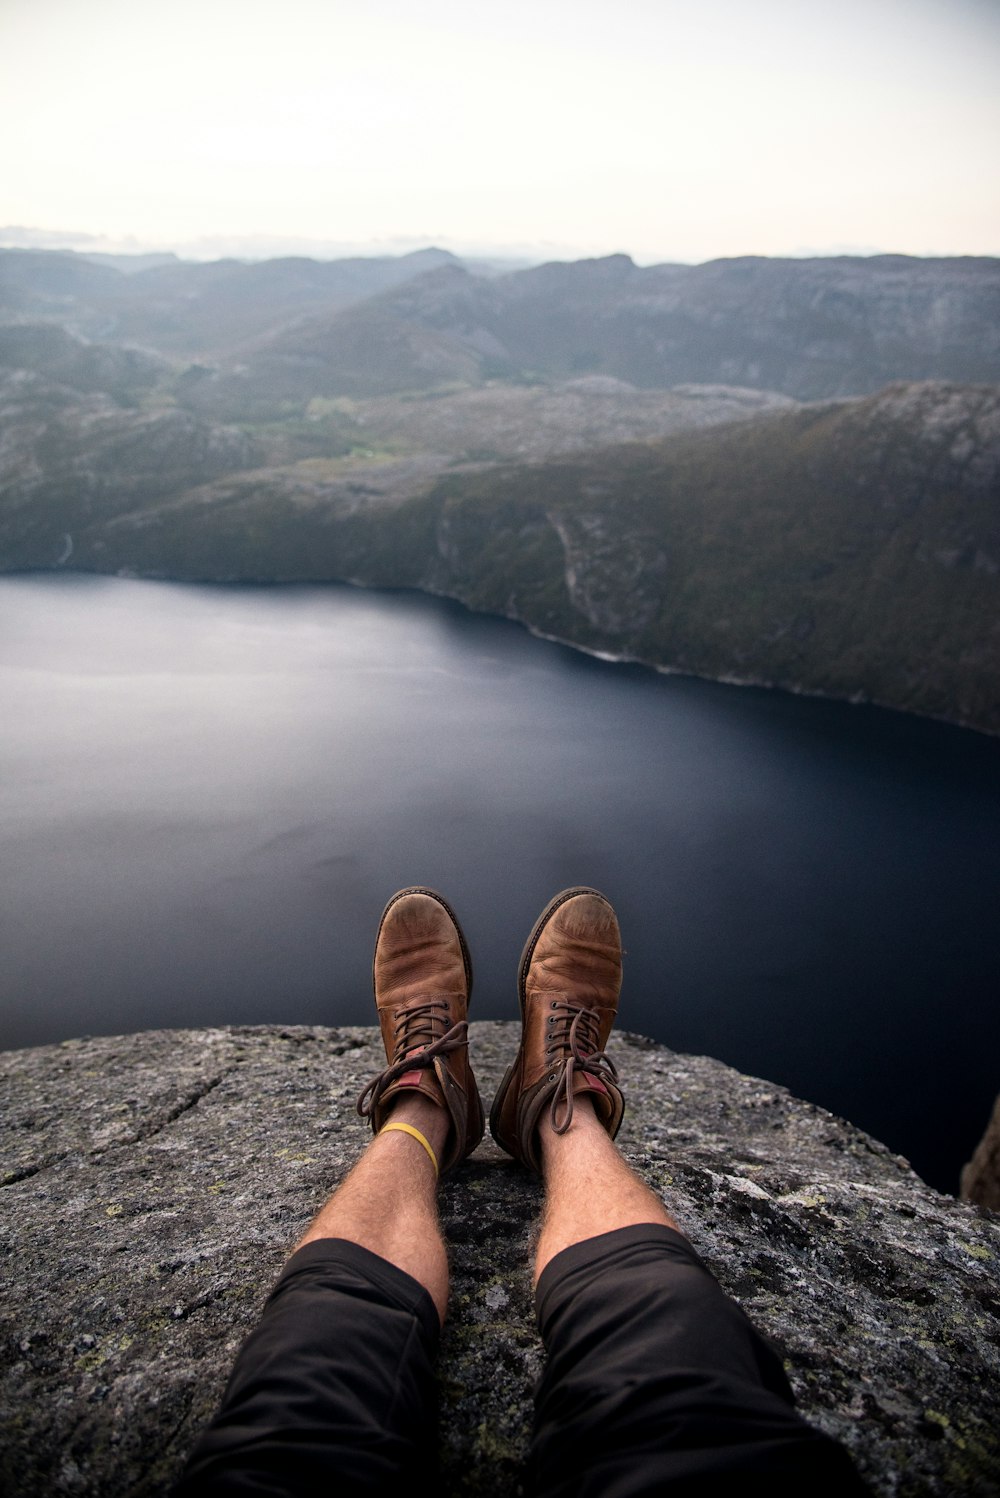 personne portant des bottes brunes assise sur une falaise devant un plan d’eau gris et calme et des formations rocheuses pendant la journée